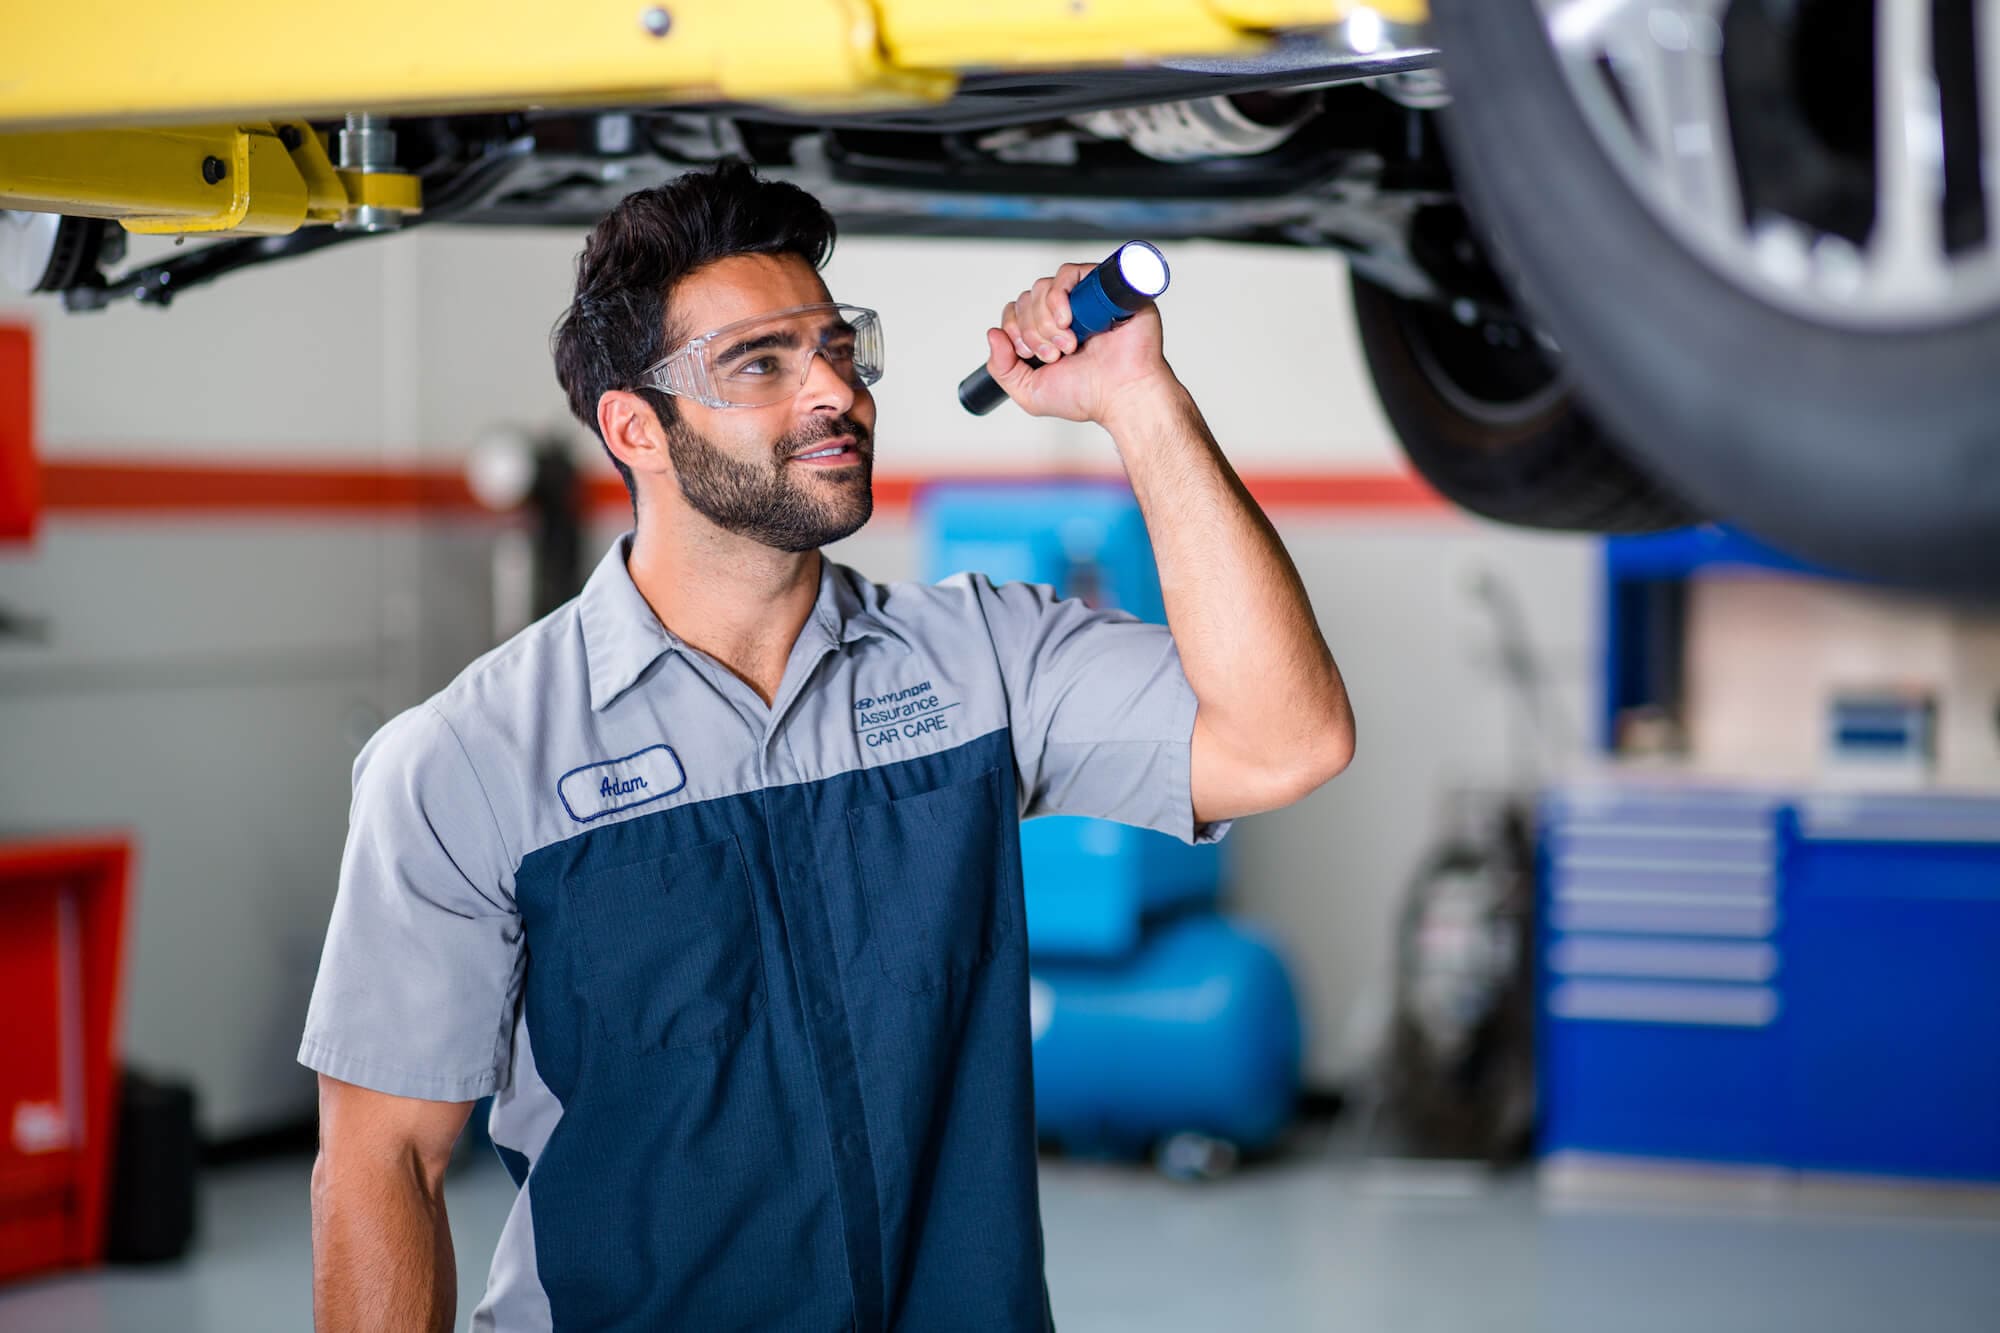 Hyundai of Central Florida - Service Technician Inspecting Brakes